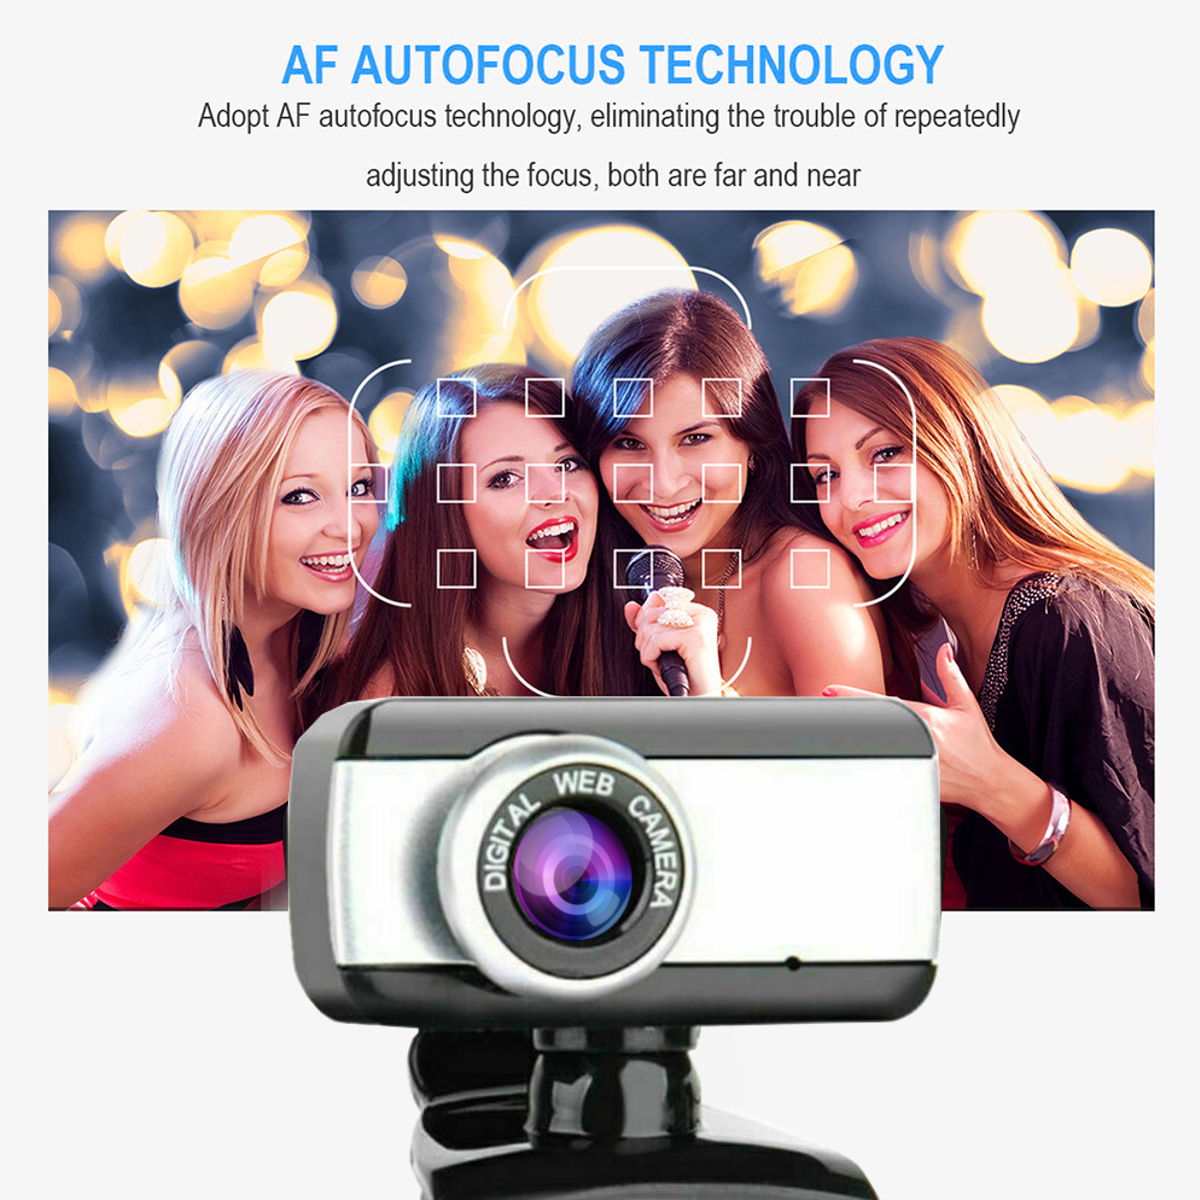 720P-HD-Webcam-CMOS-50-Mega-Pixels-USB20-Web-Camera-Built-in-Microphone-Camera-for-Desktop-Computer--1769965-4